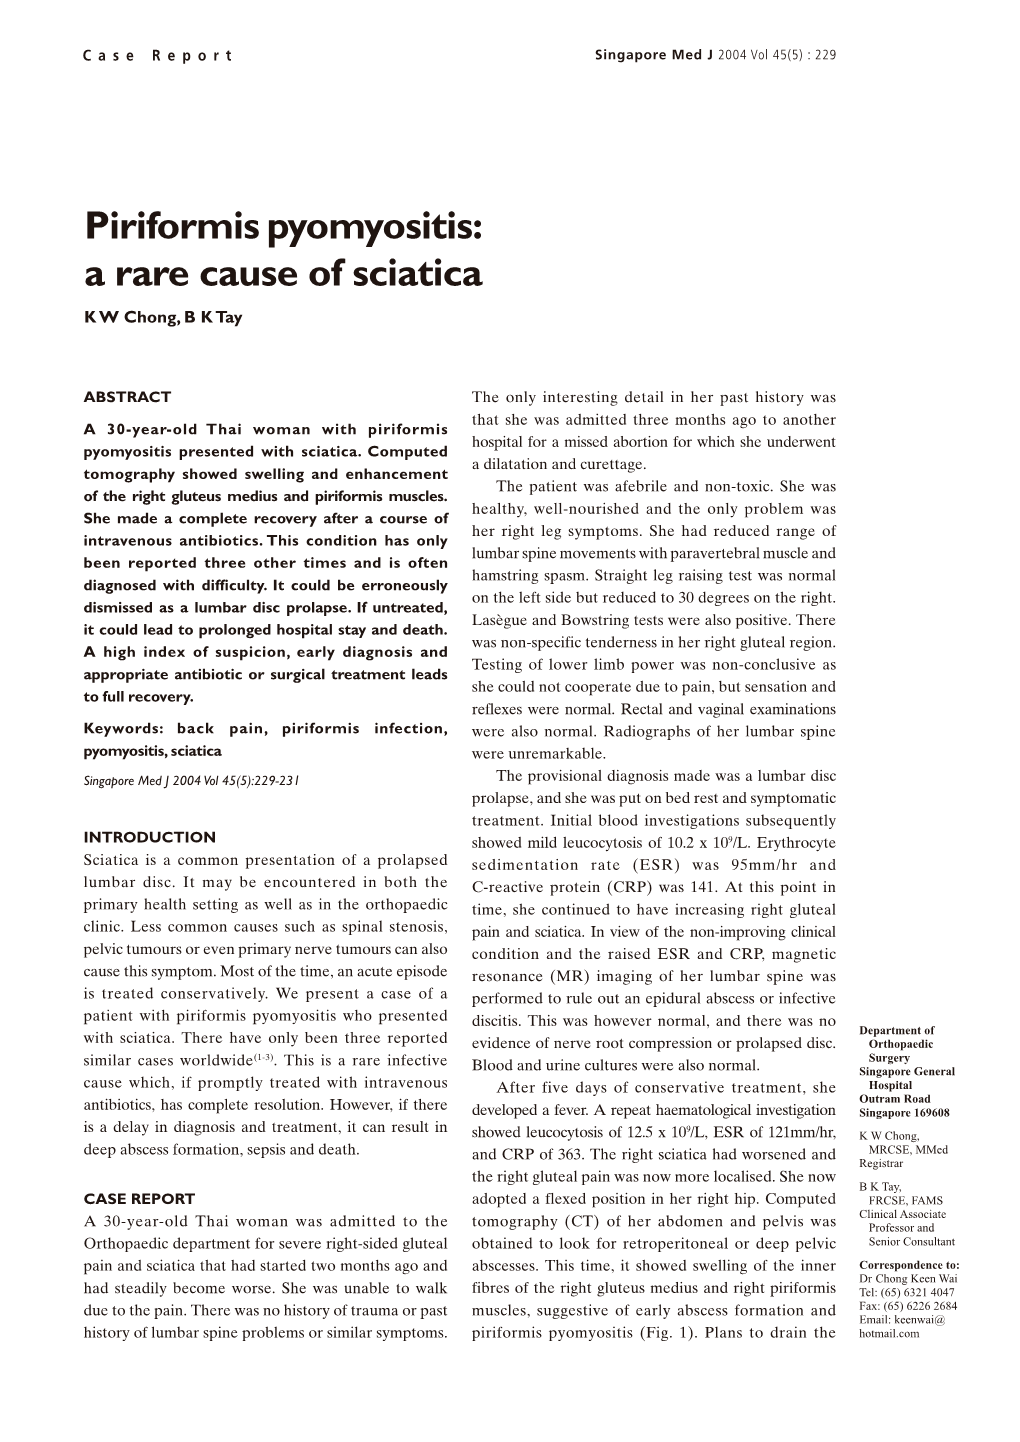 Piriformis Pyomyositis: a Rare Cause of Sciatica K W Chong, B K Tay